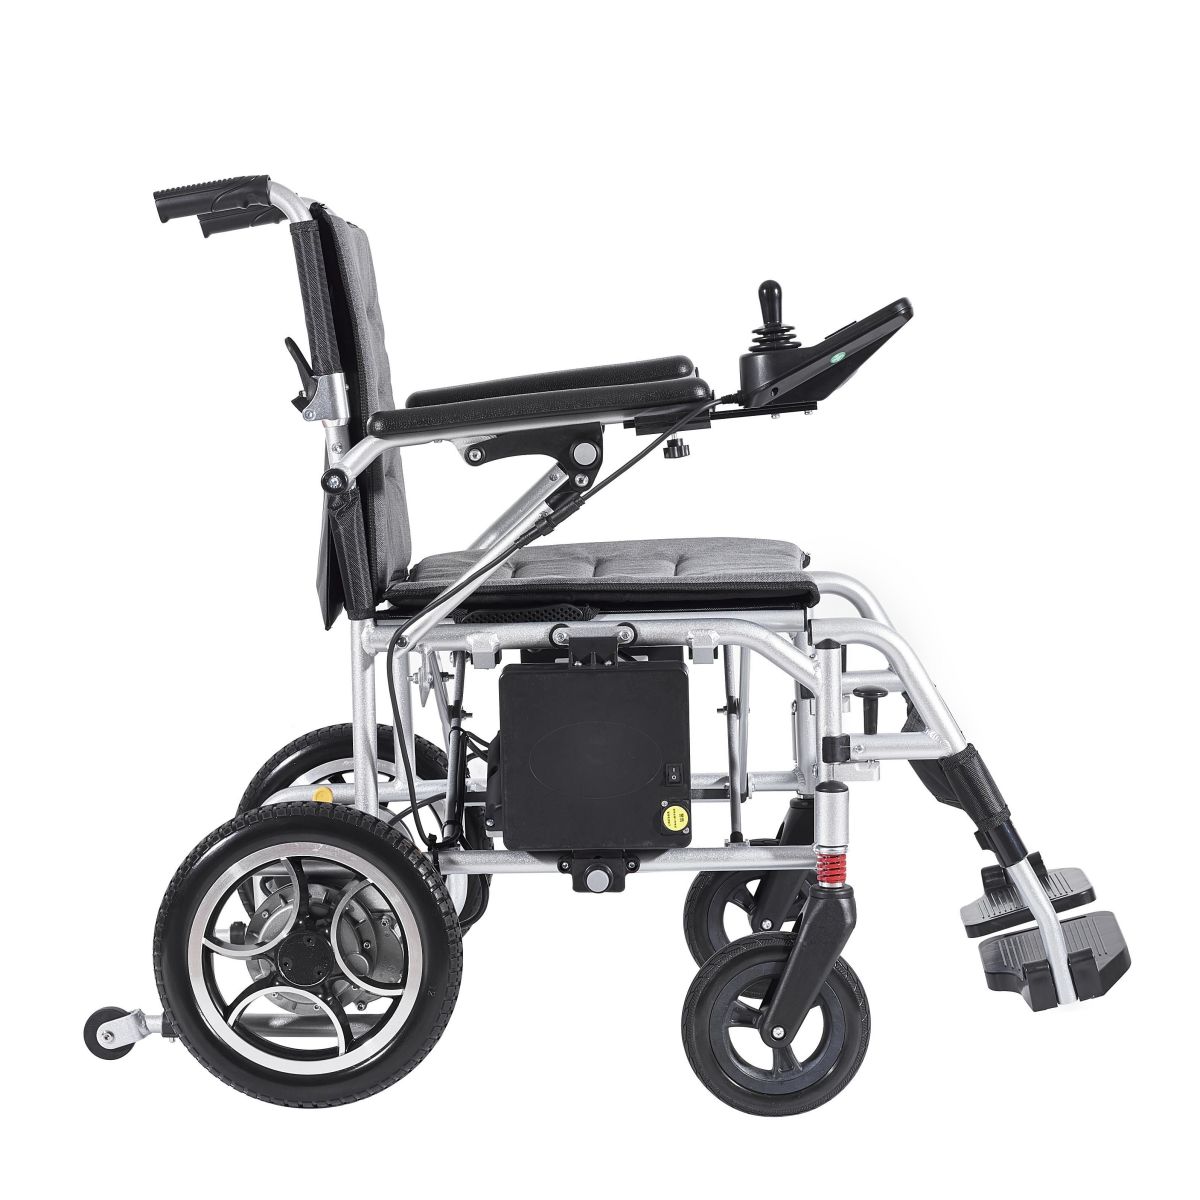 Proveedor de sillas de ruedas eléctricas portátiles de China: puntos de conocimiento para elegir una silla de ruedas eléctrica